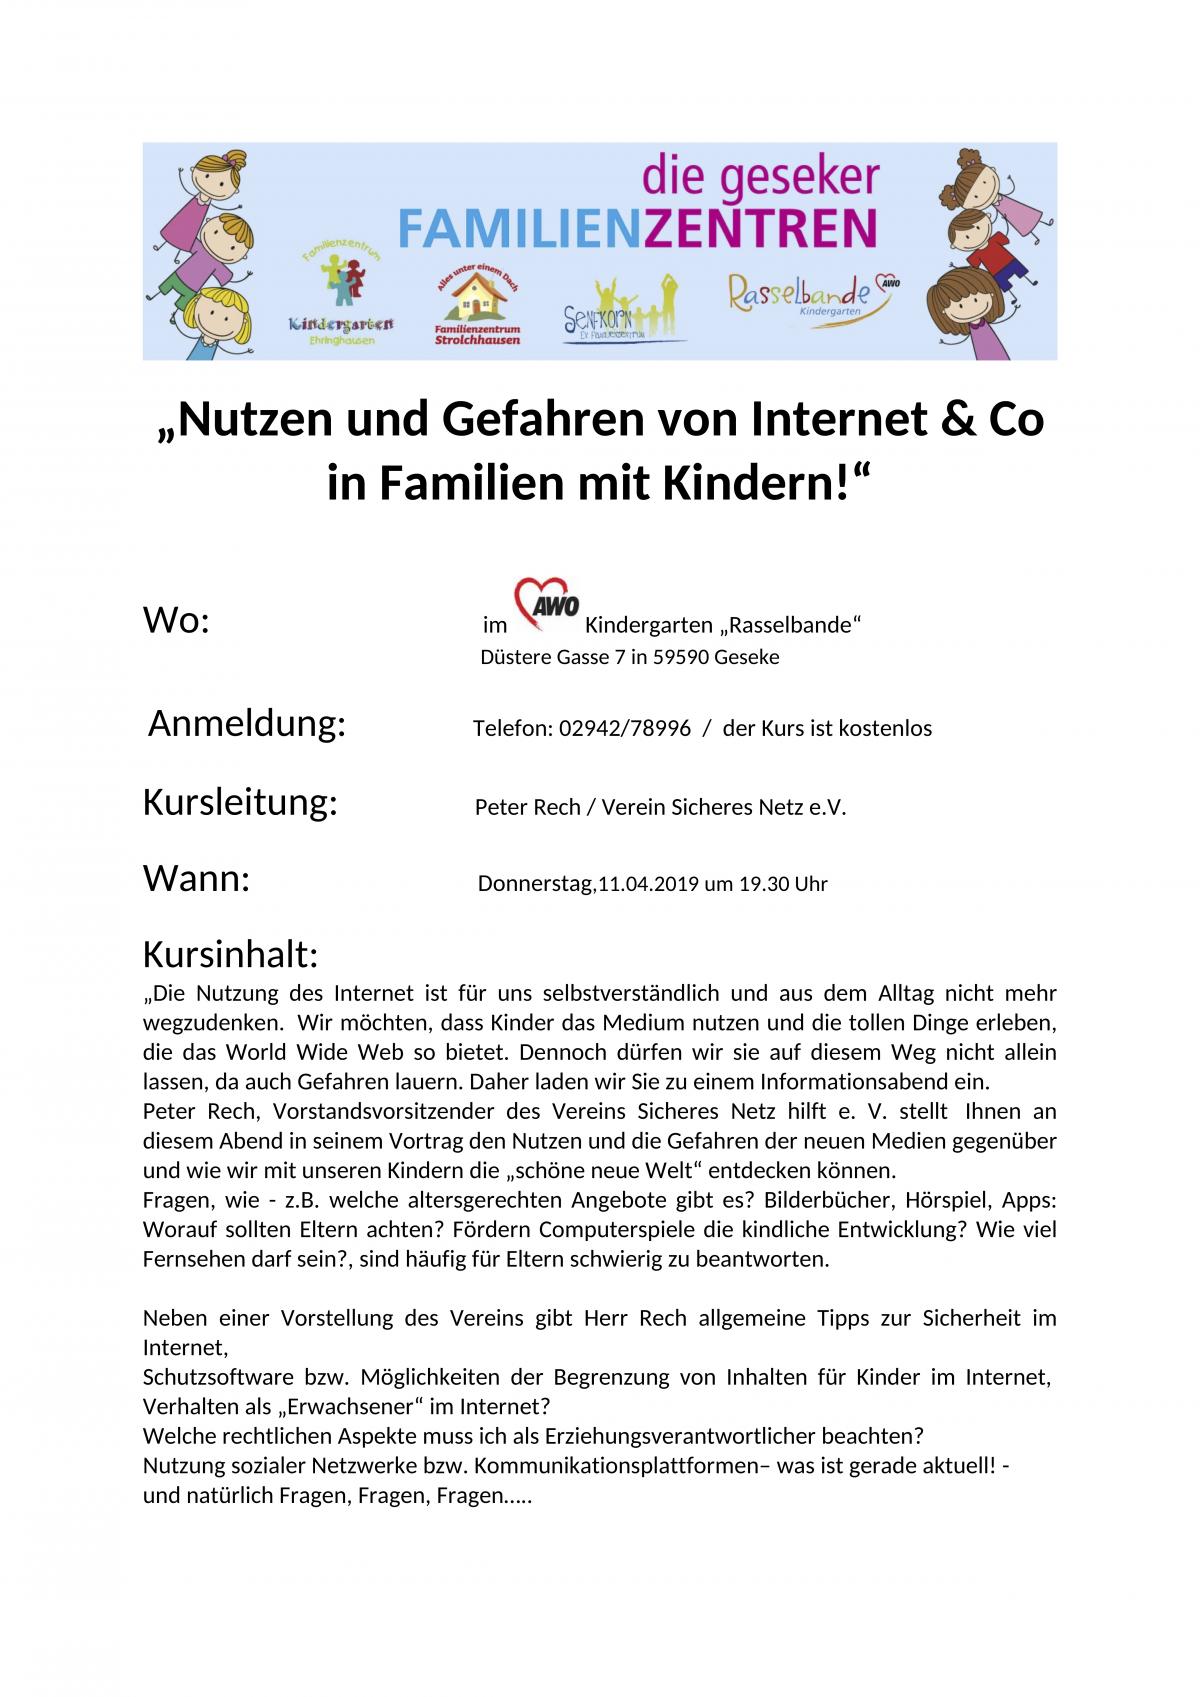 „Nutzen und Gefahren von Internet & Co in Familien mit Kindern!“